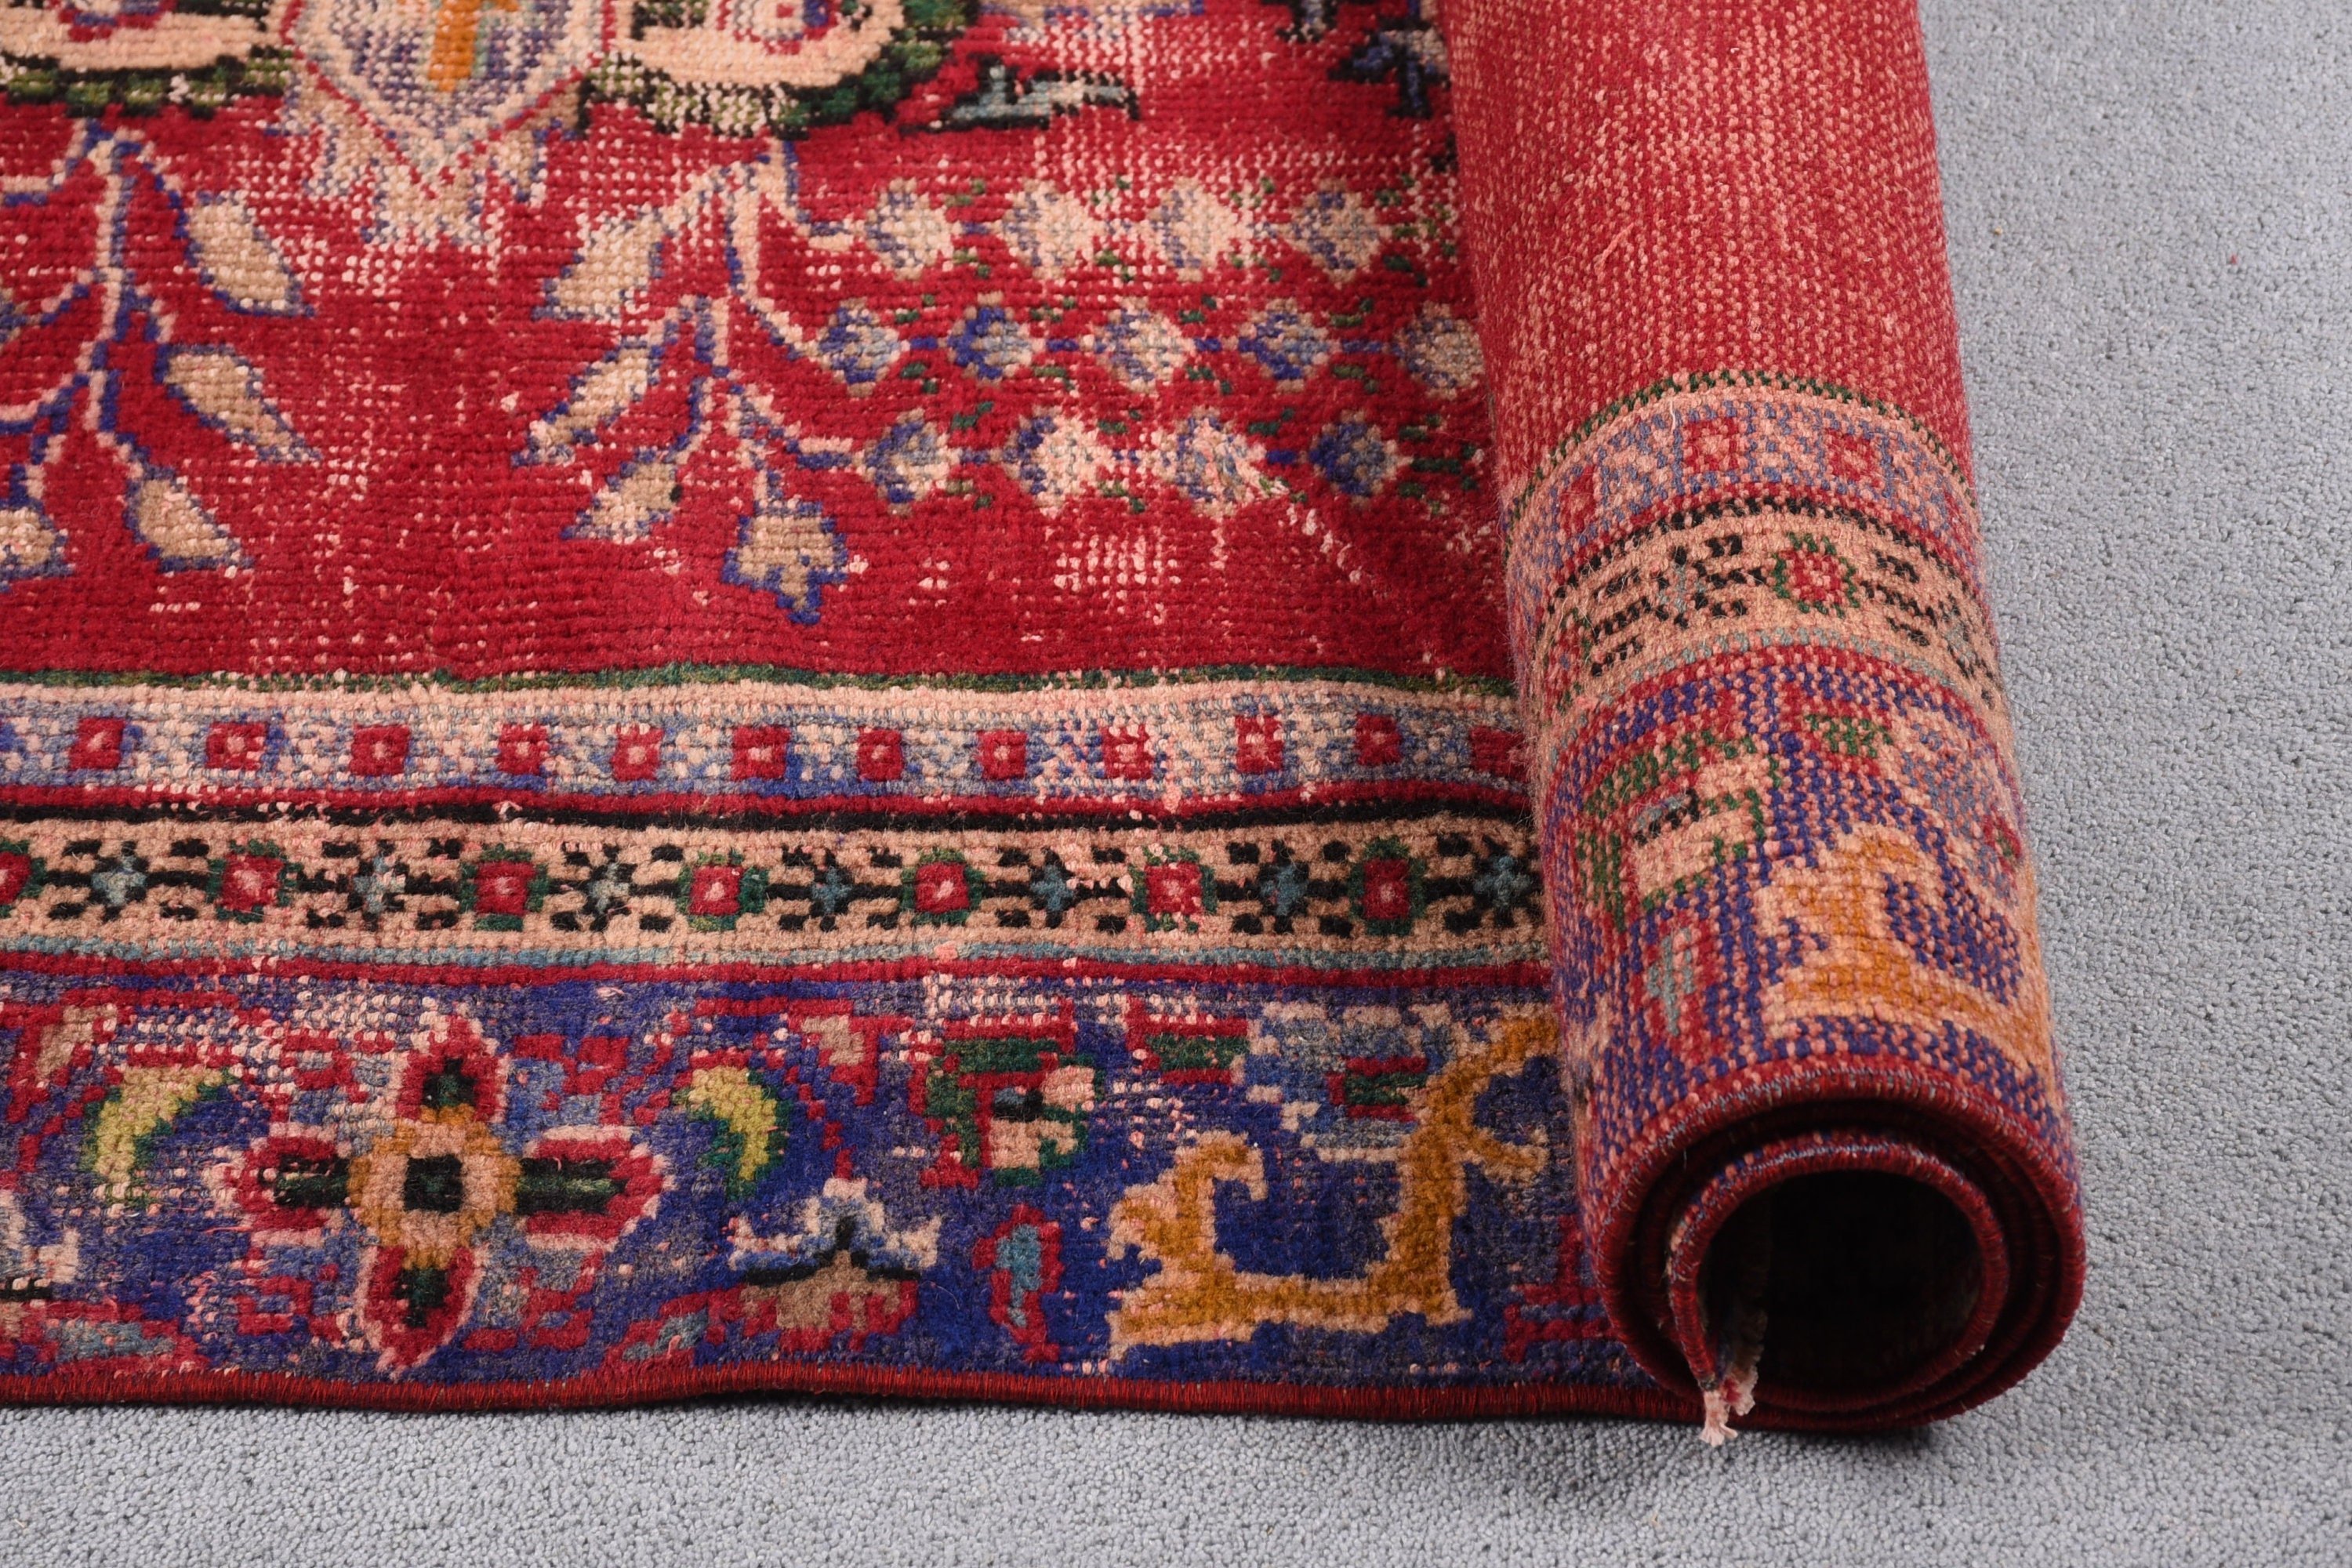 Vintage Rug, Kitchen Rug, Antique Rugs, Red Cool Rug, Turkish Rugs, Bedroom Rug, Living Room Rug, Vintage Decor Rugs, 6.3x10.7 ft Large Rug